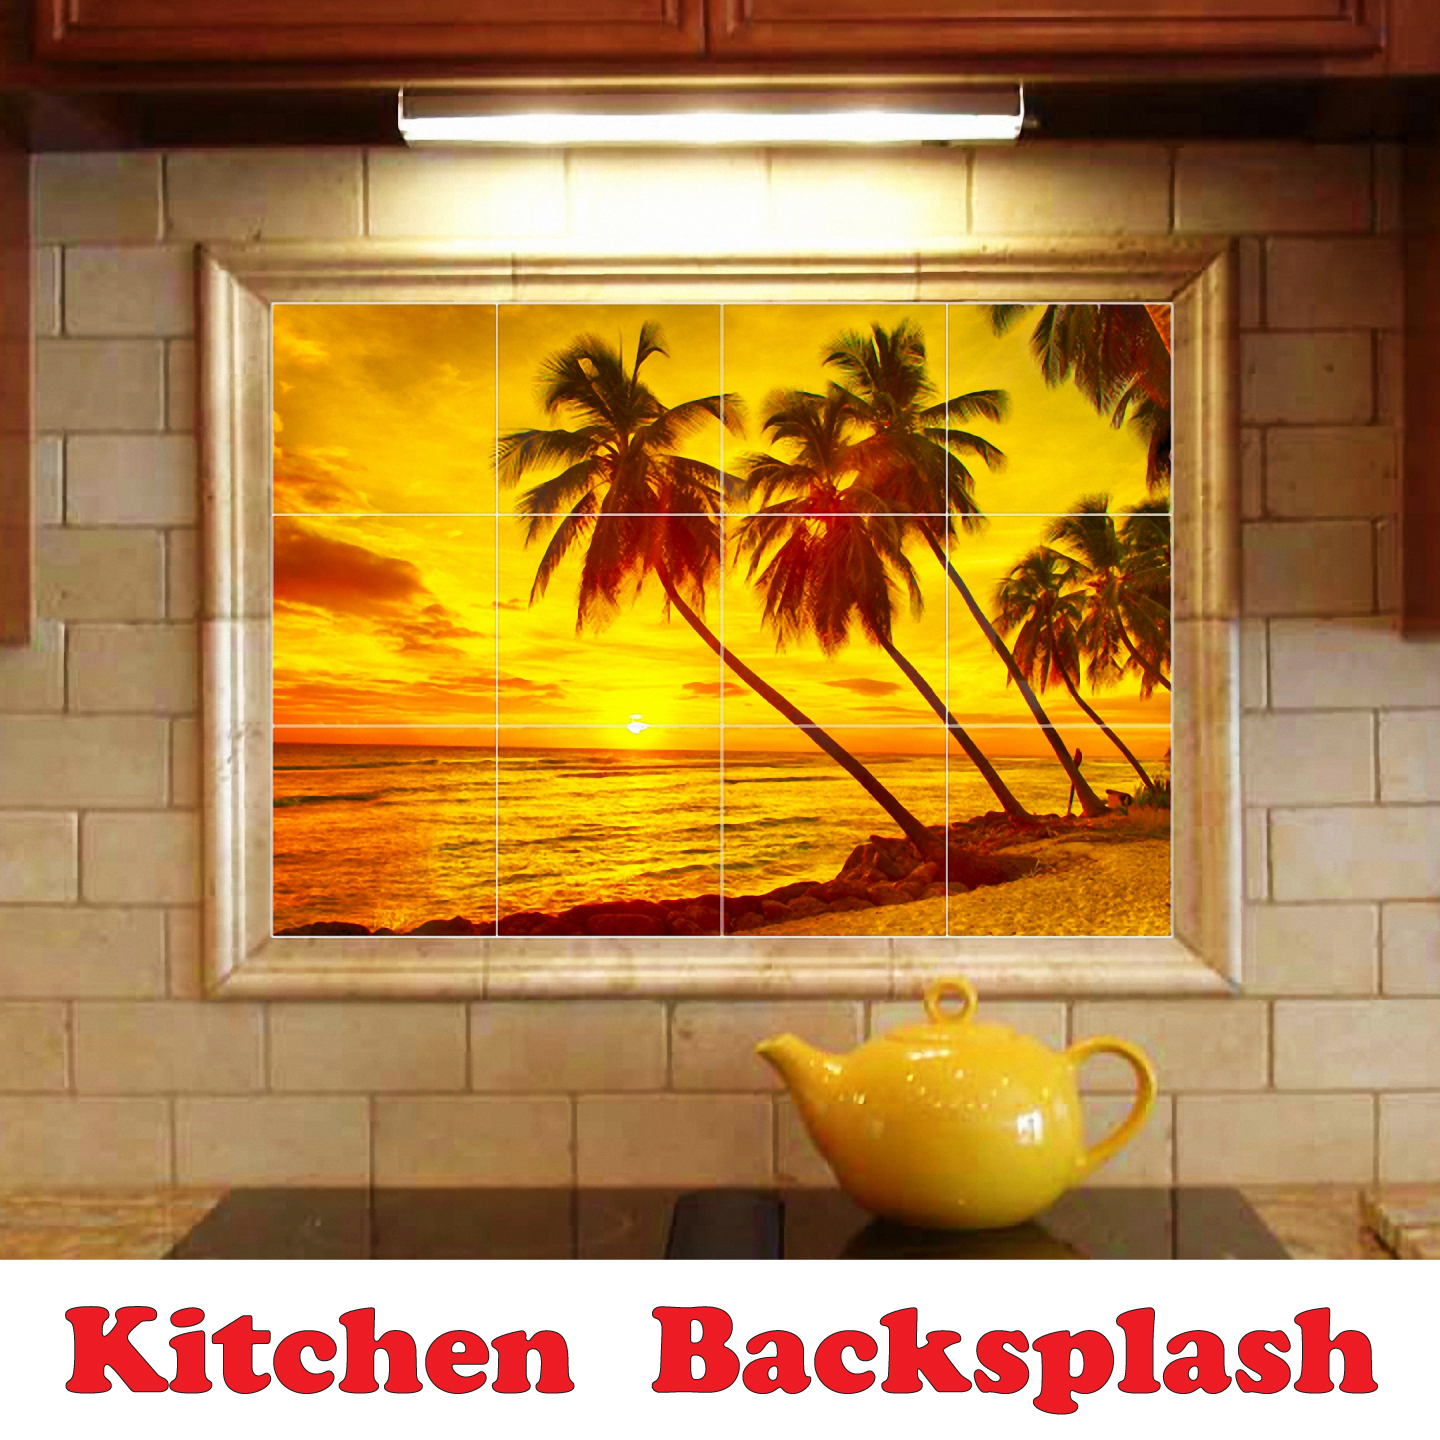 Dolphin Ceramic Tile Mural Kitchen Backsplash Bathroom Shower, 402808-XL64 - image 2 of 3